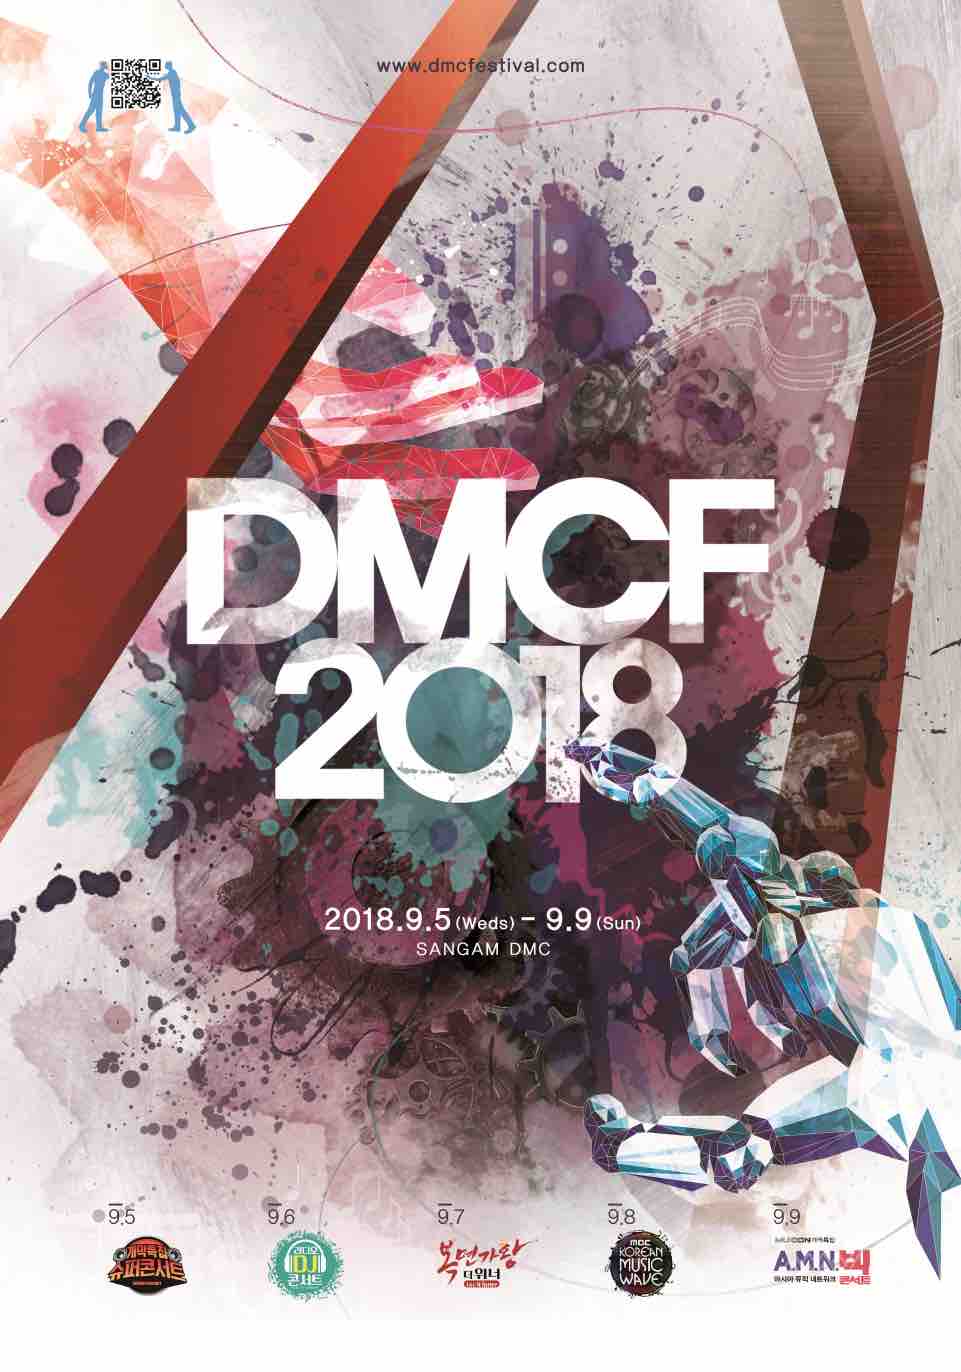 DMCF 2018